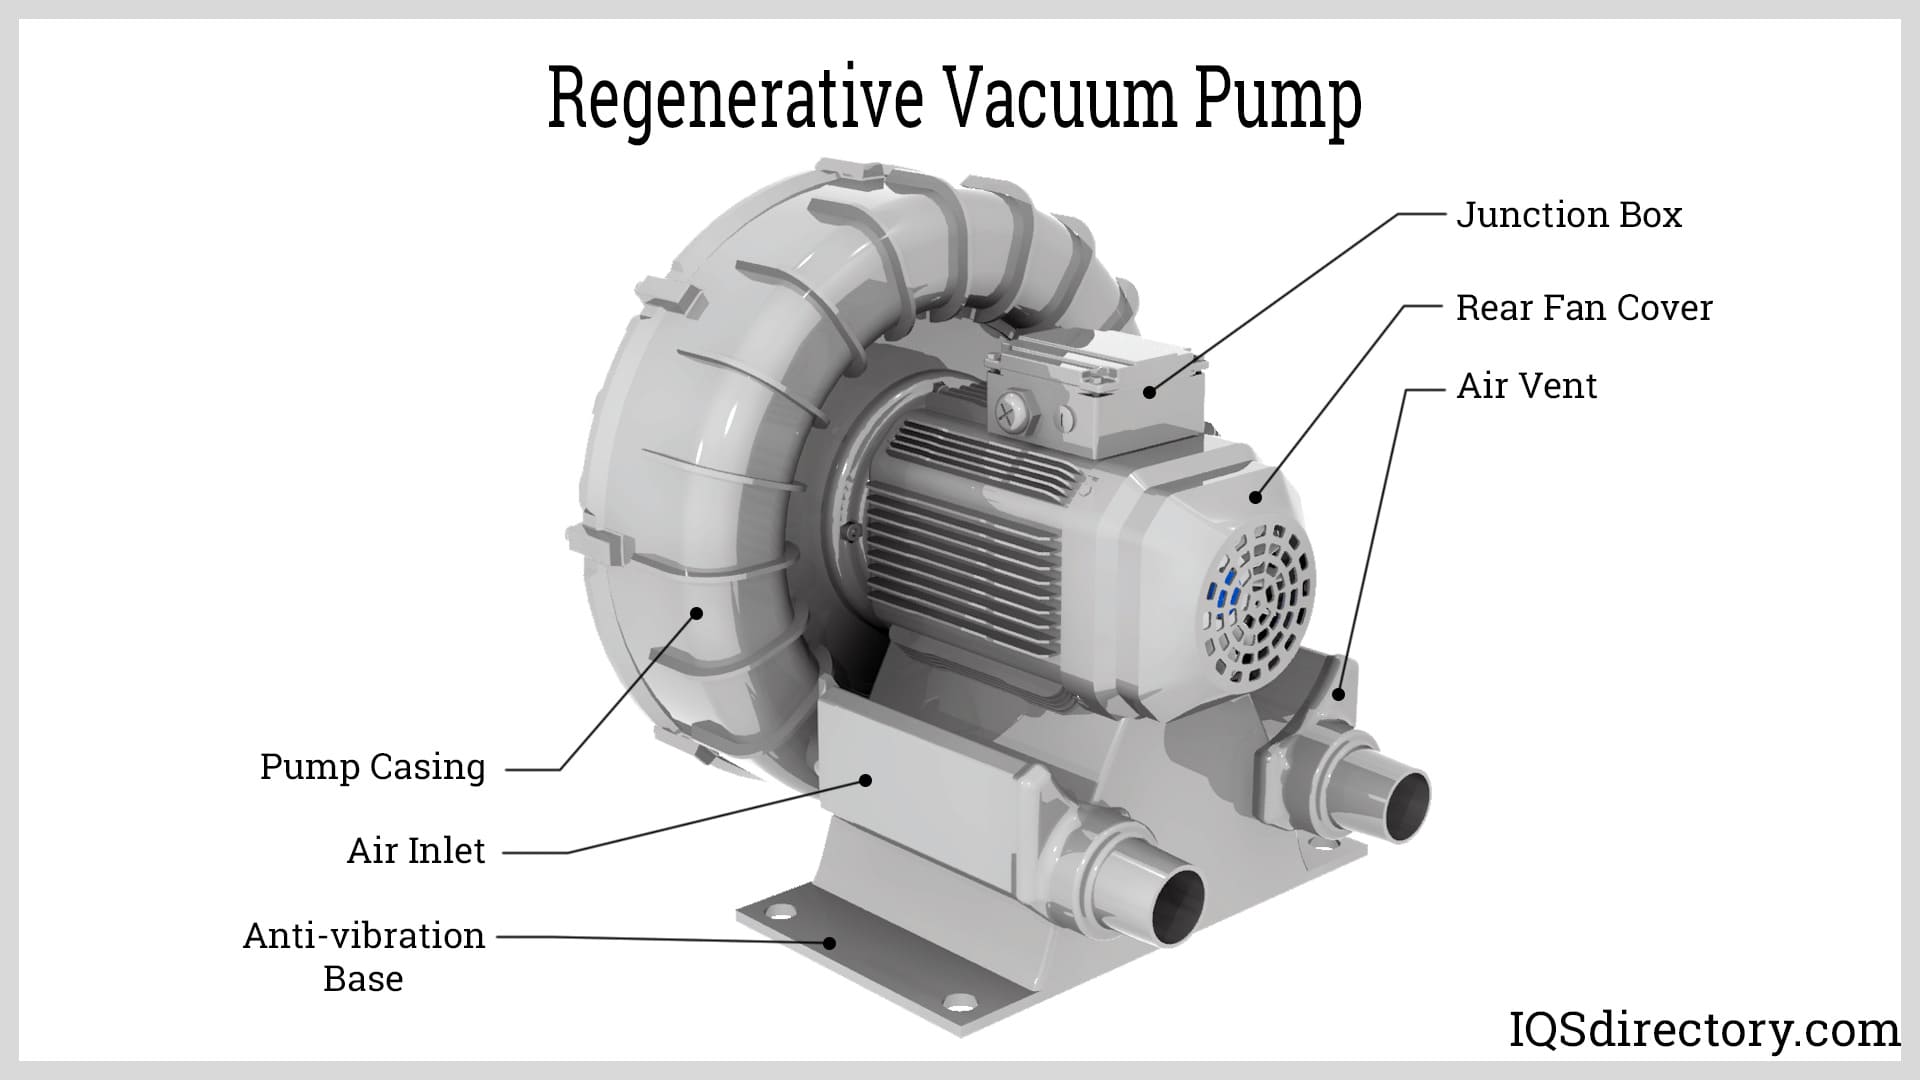 Regenerative Vacuum Pump